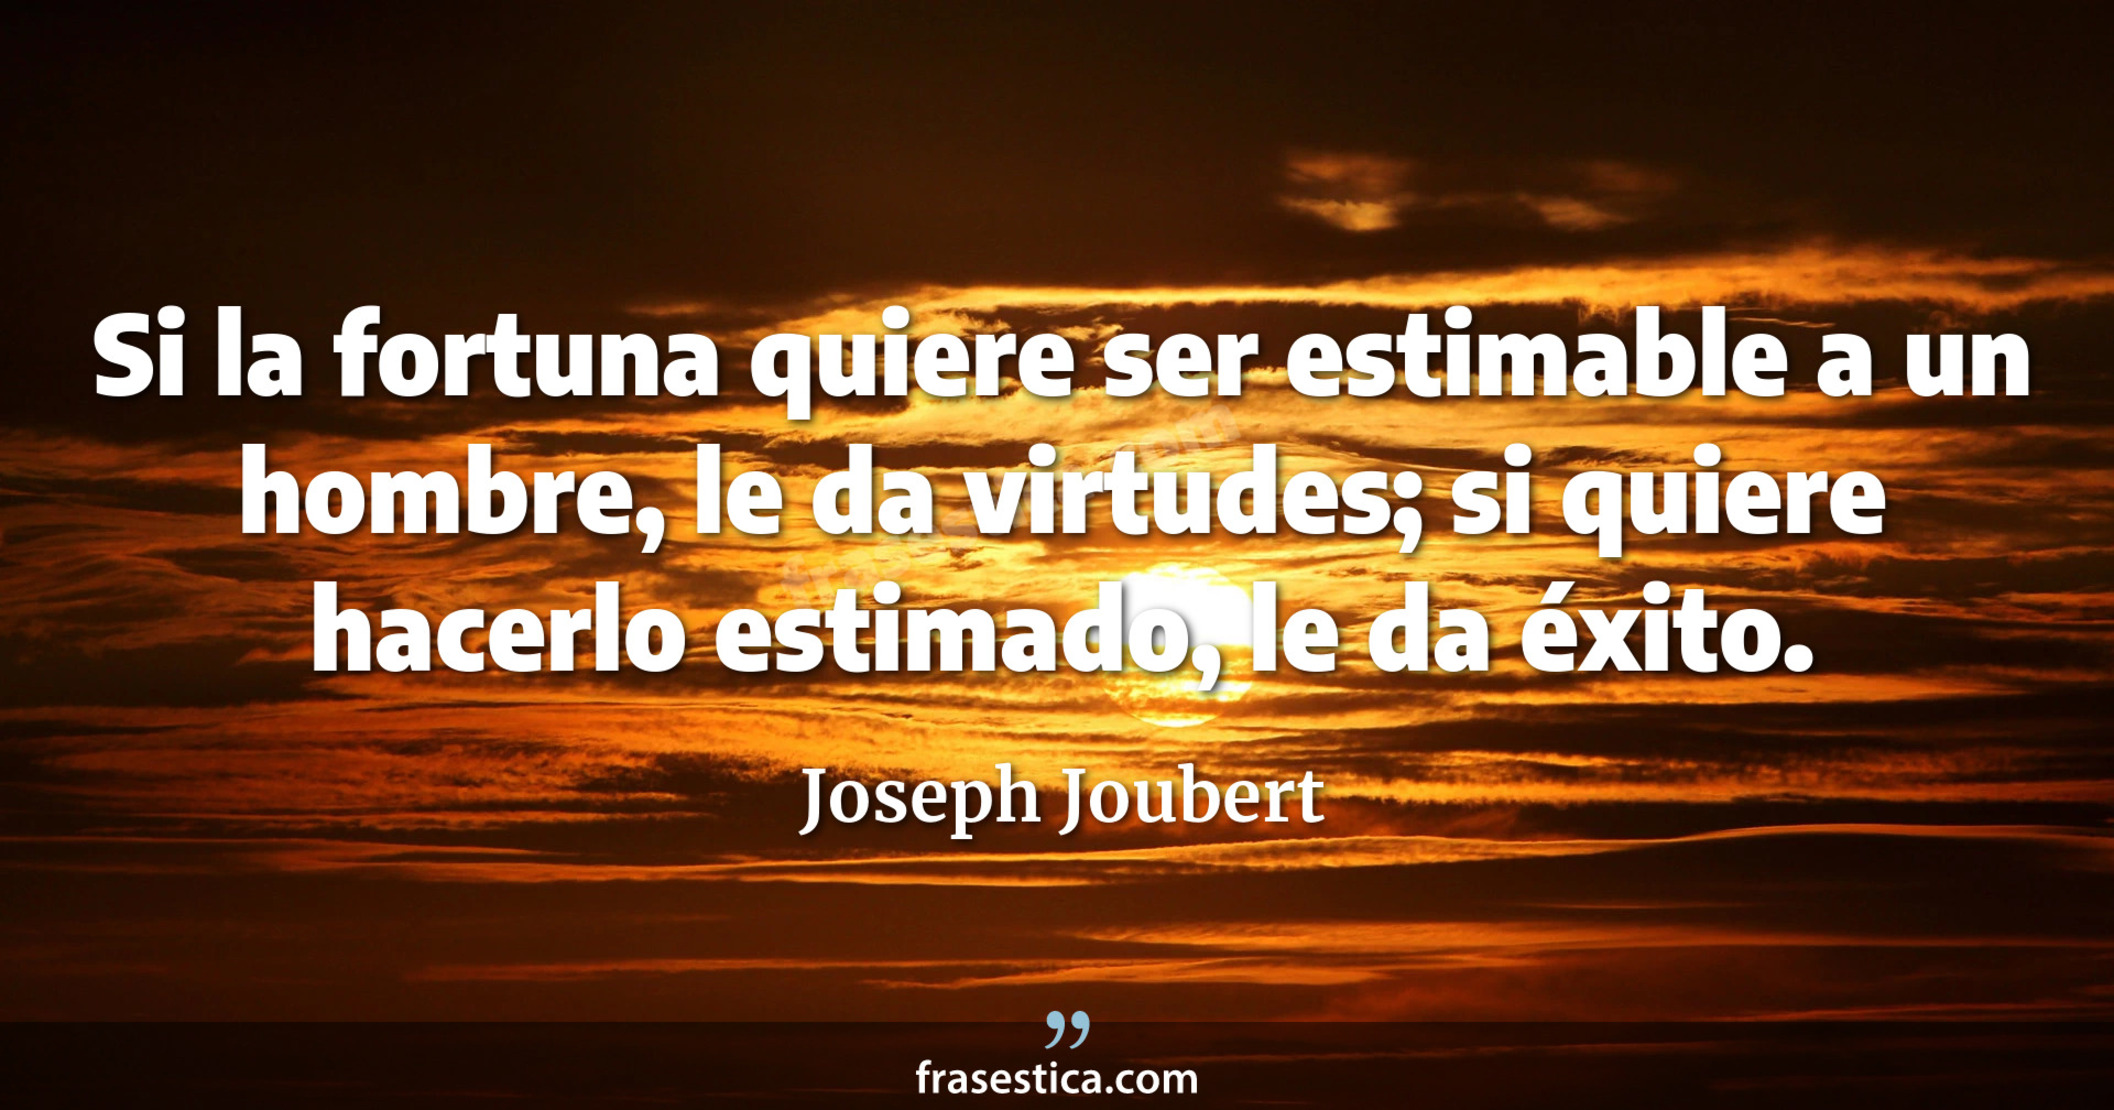 Si la fortuna quiere ser estimable a un hombre, le da virtudes; si quiere hacerlo estimado, le da éxito. - Joseph Joubert